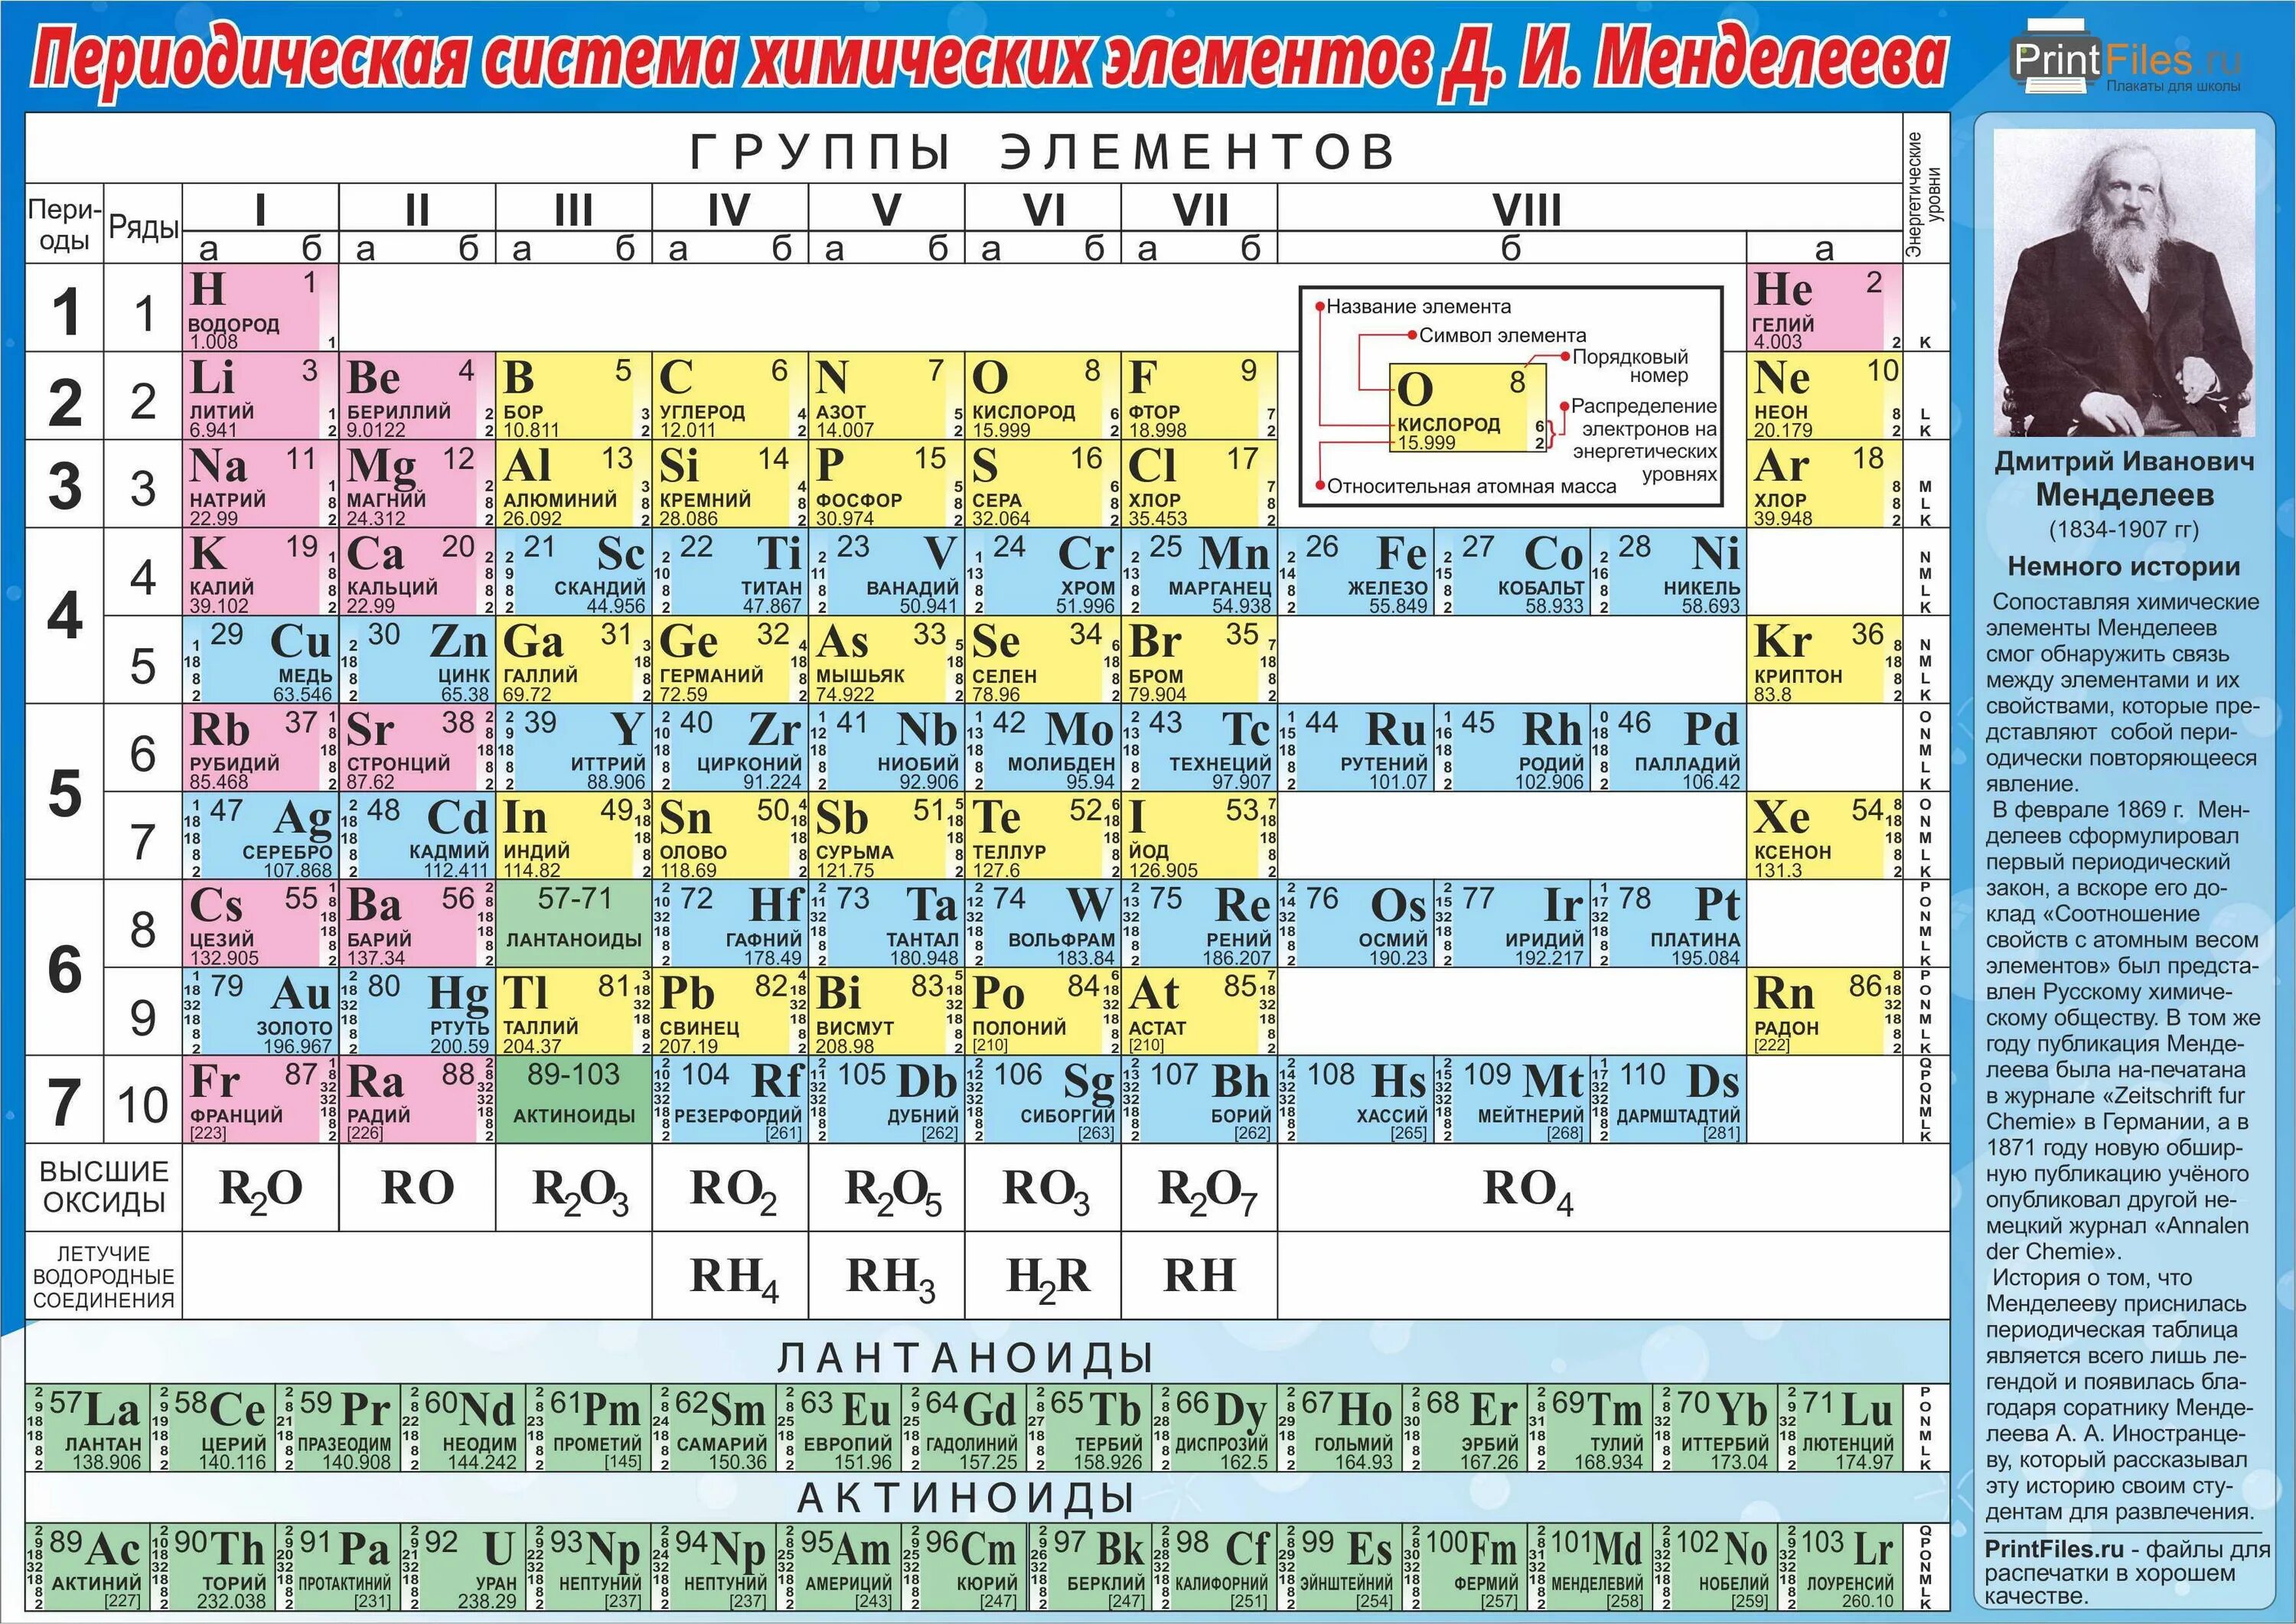 S p металлов. Периодическая таблица химических элементов Менделеева. Таблица Менделеева для печати. Таблица химических элементов Менделеева 8 класс химия. Таблица Менделеева по химии для печати цветная.